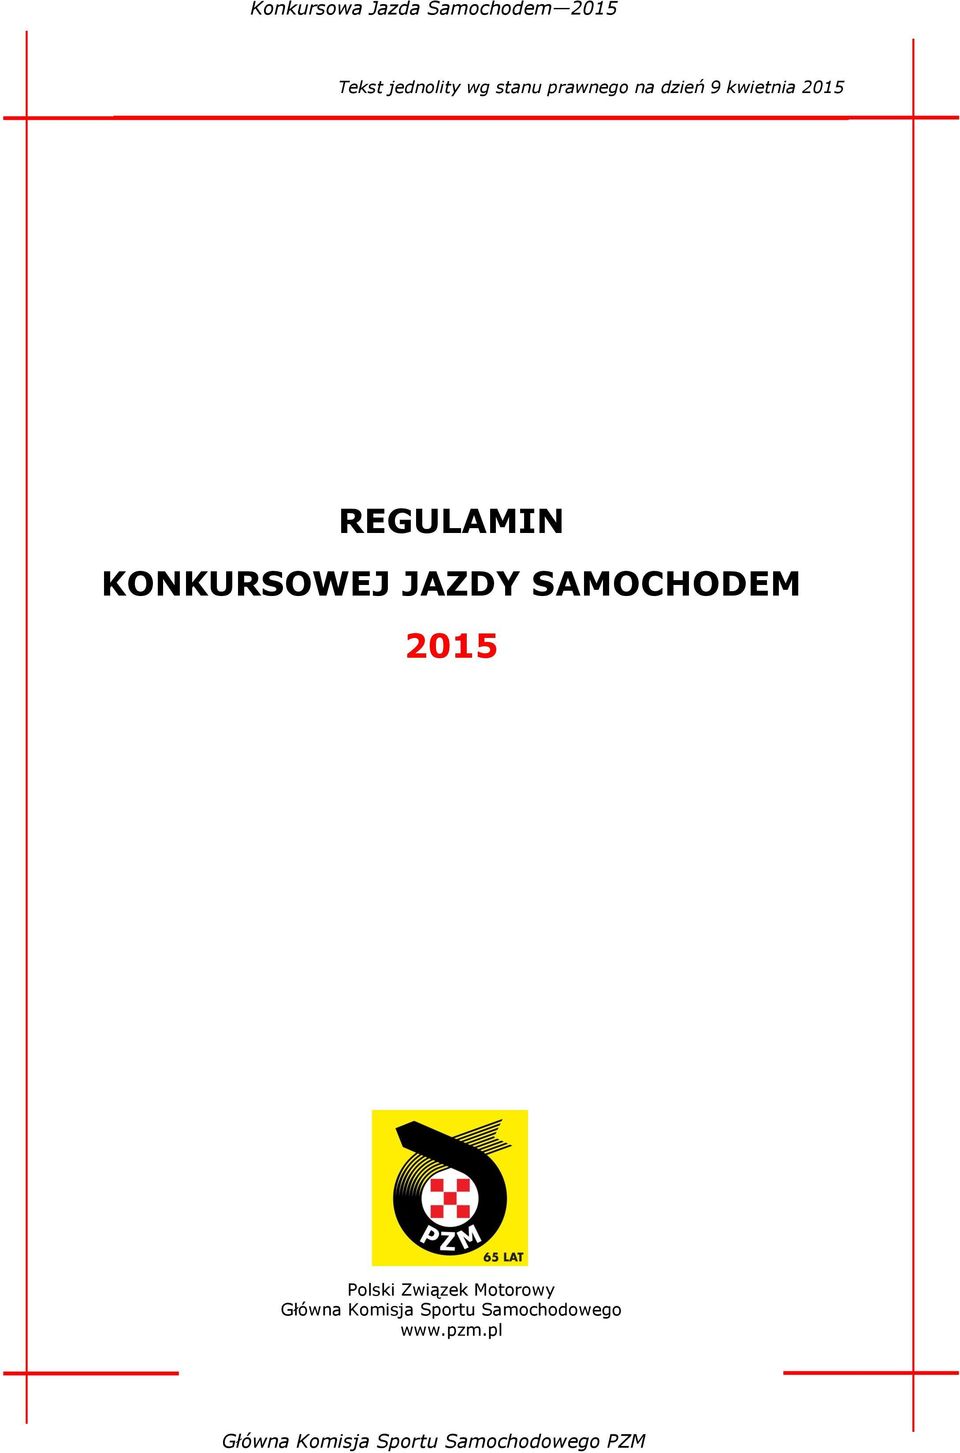 SAMOCHODEM 2015 Polski Związek Motorowy